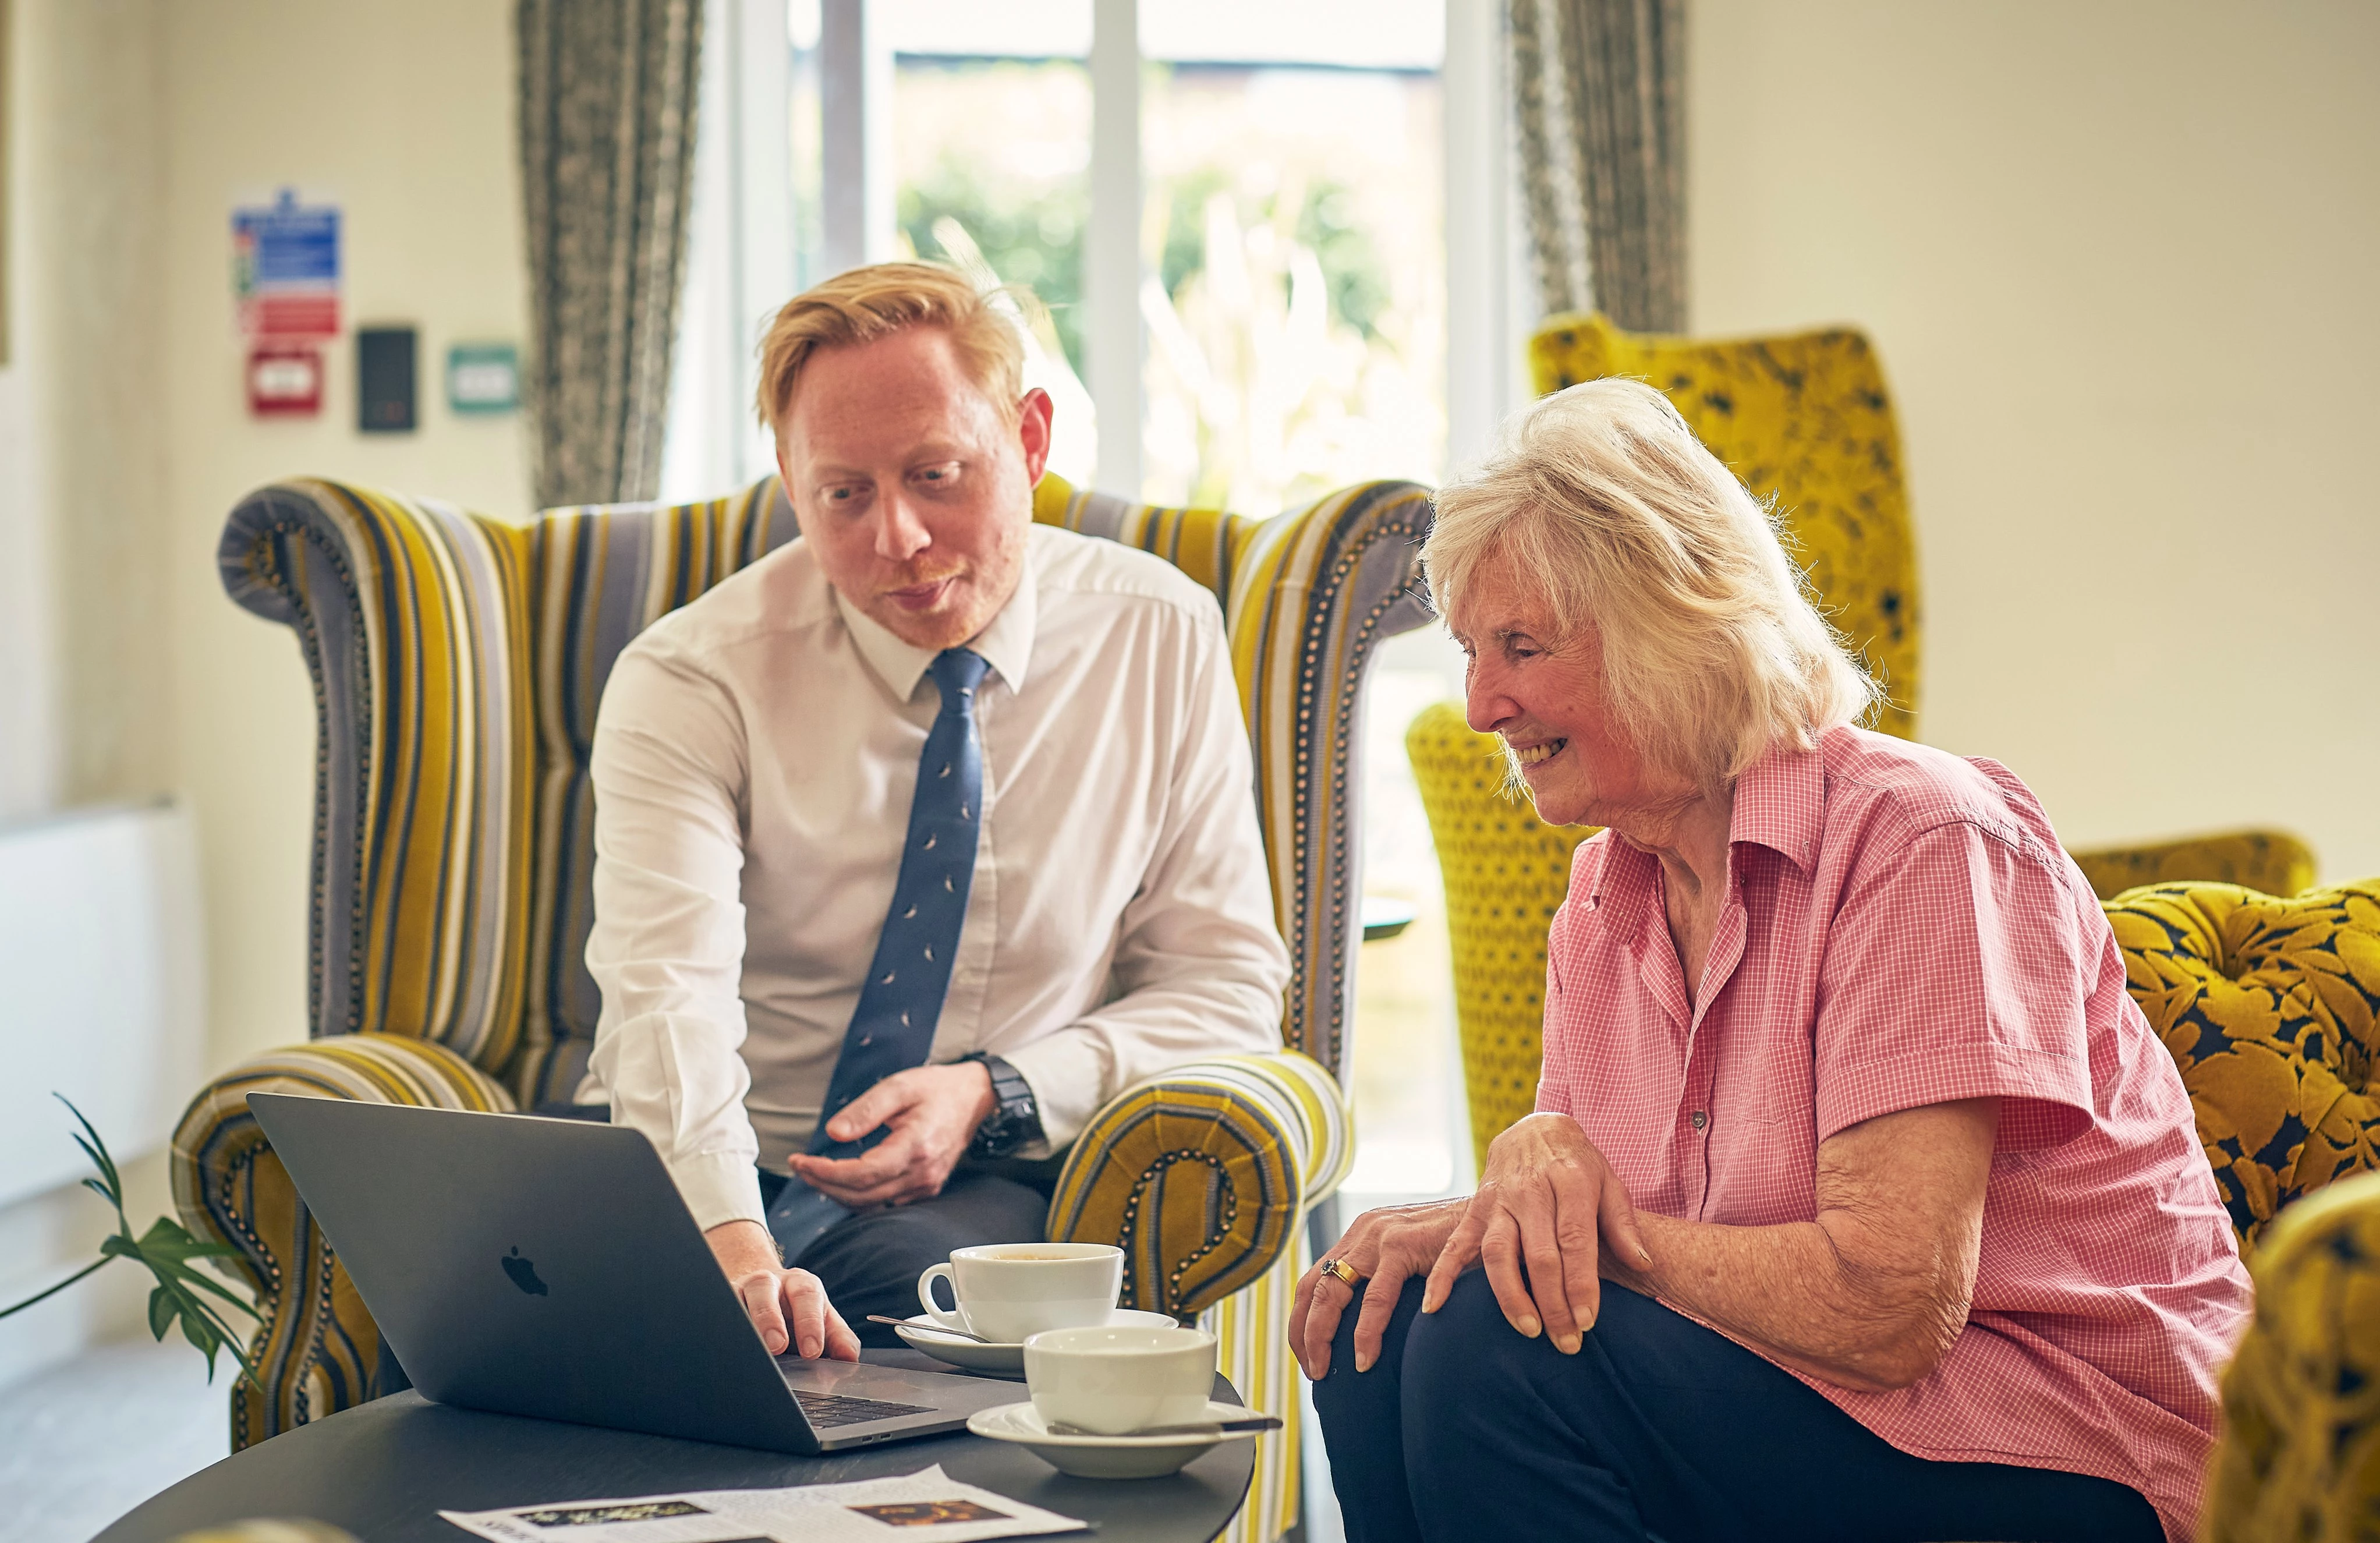 Adlington Management Services expands to 12 retirement communities